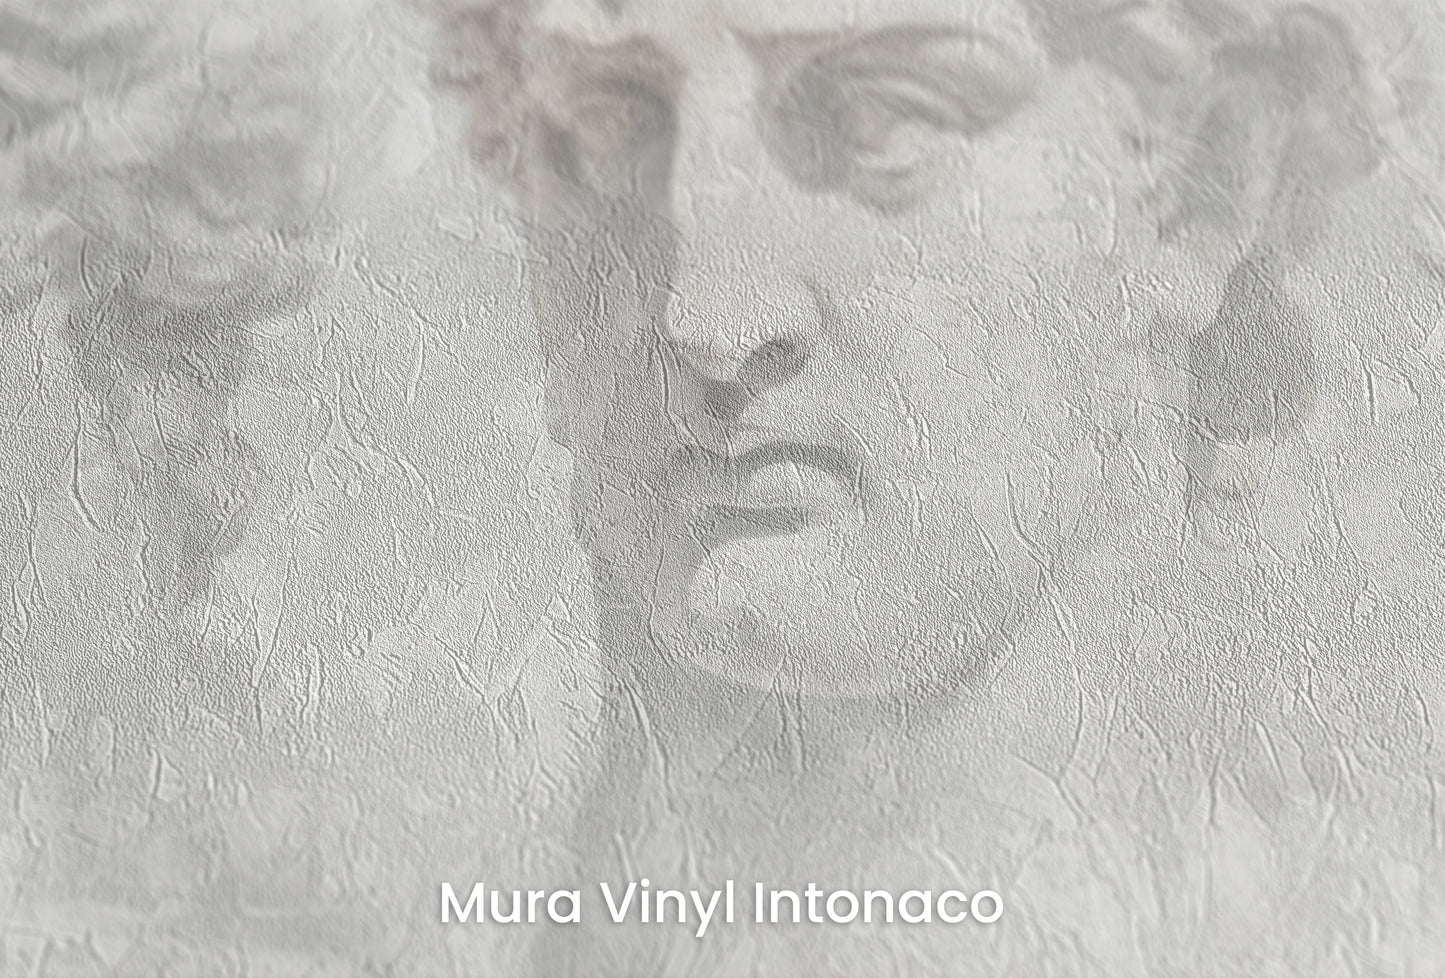 Zbliżenie na artystyczną fototapetę o nazwie Sorrow of Niobe na podłożu Mura Vinyl Intonaco - struktura tartego tynku.